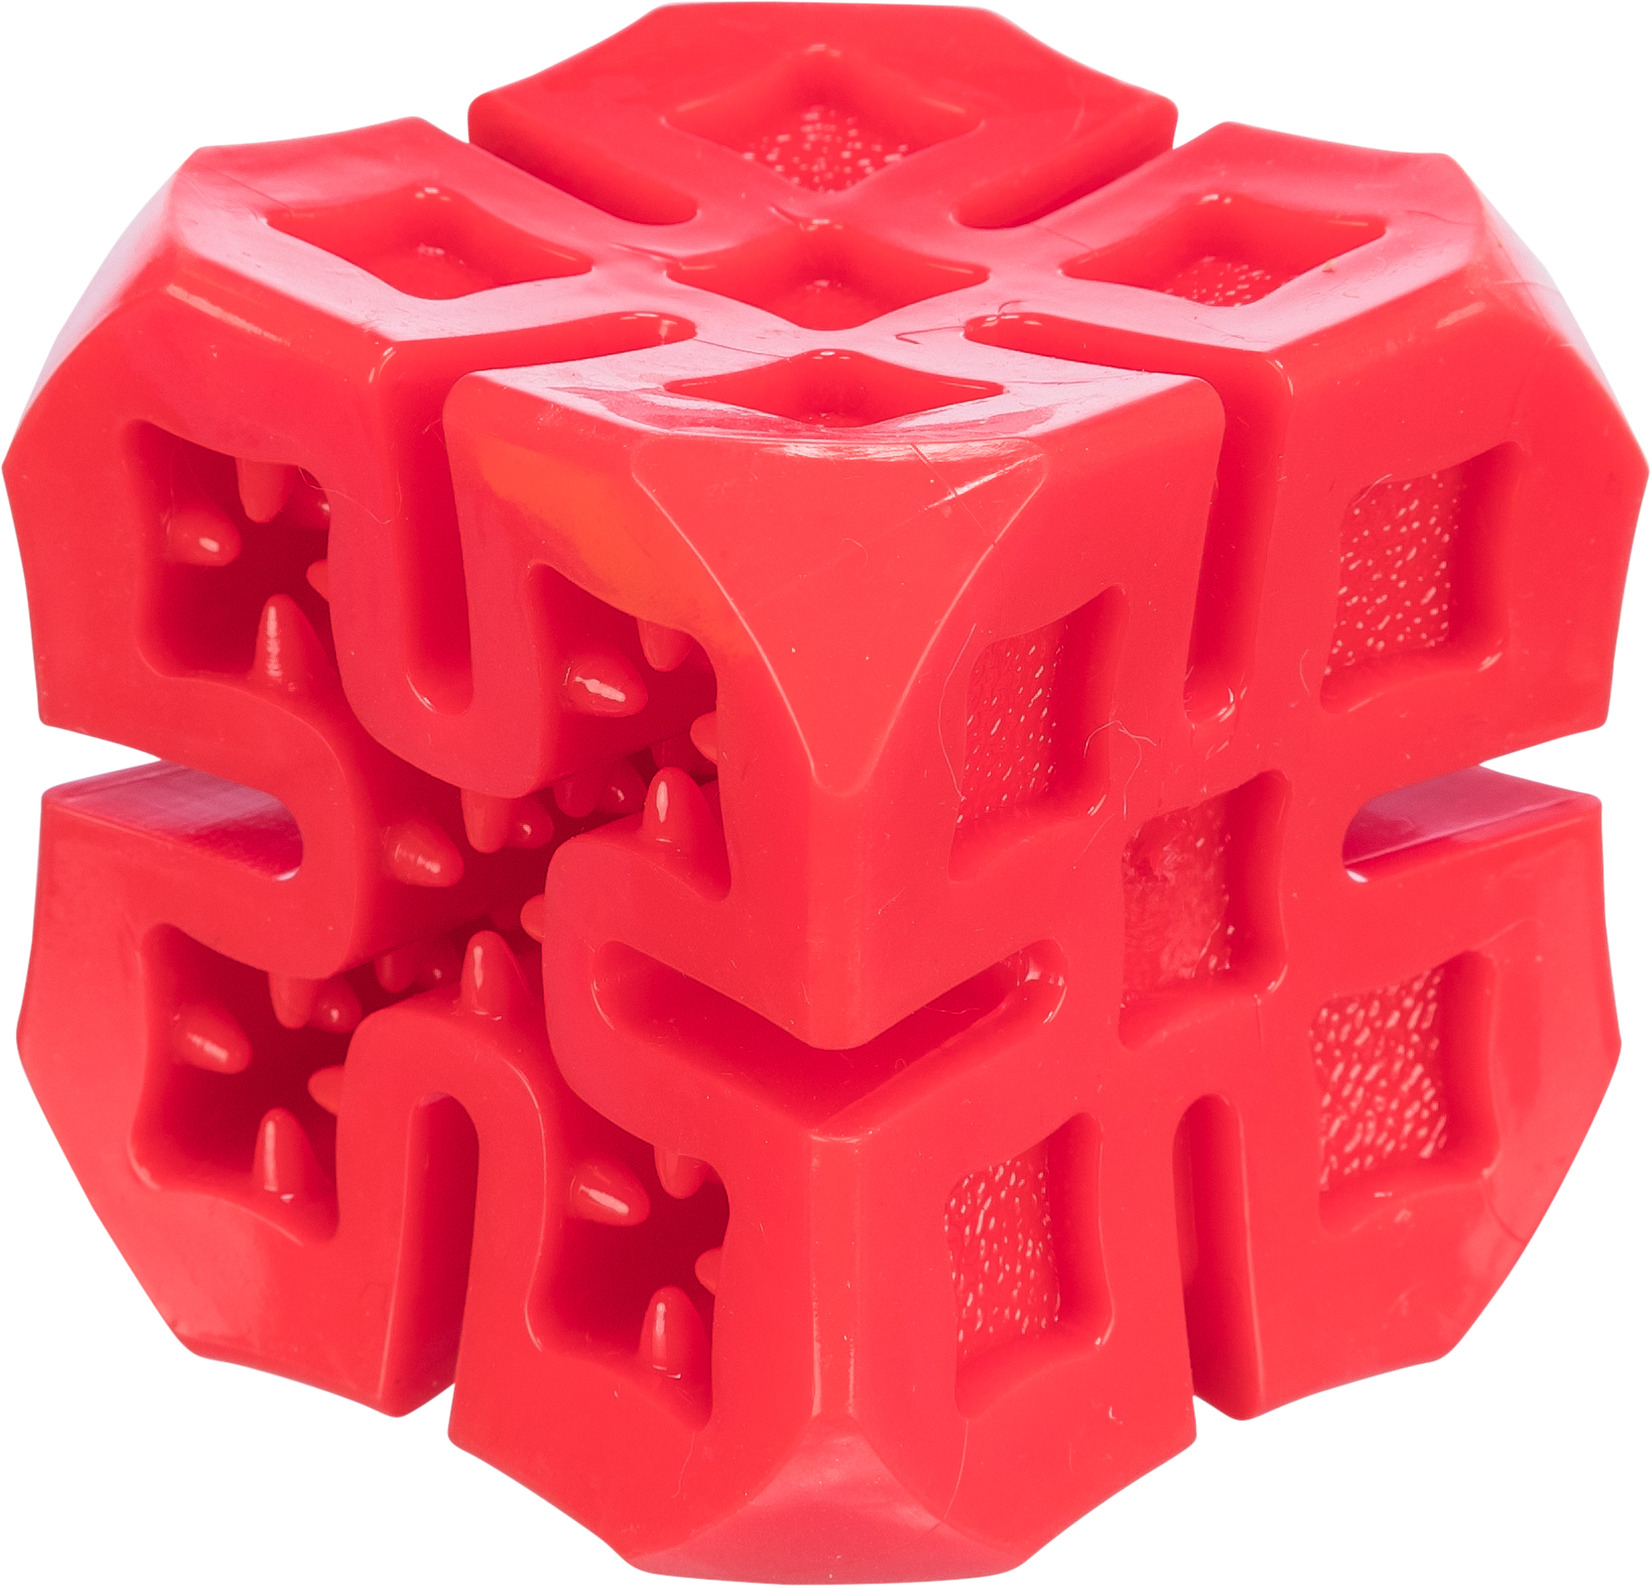 Cube friandises en TPR